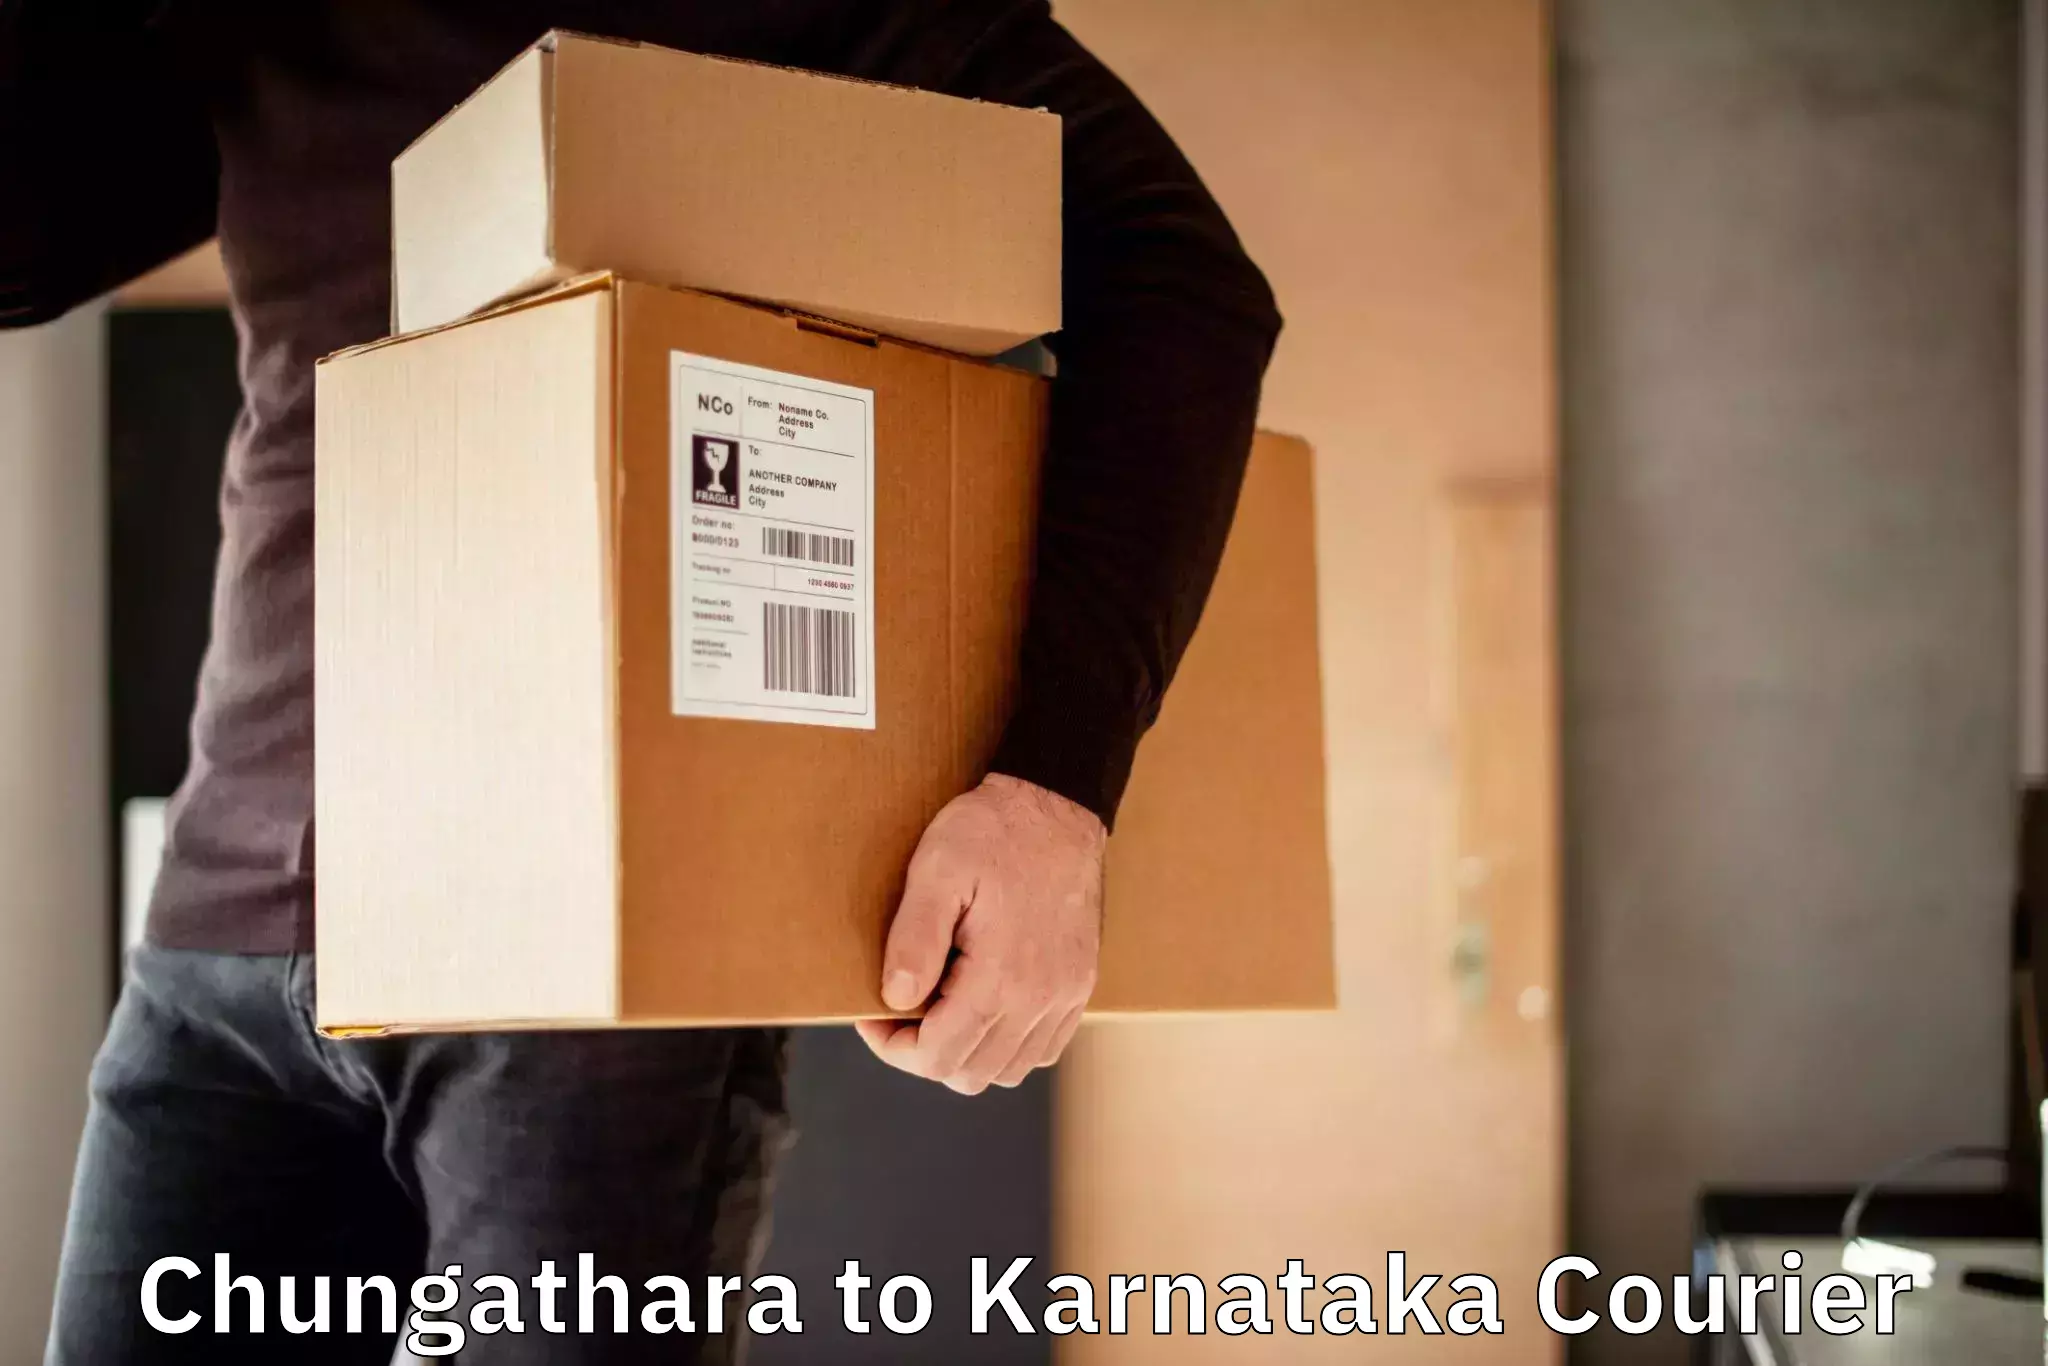 Weekend courier service Chungathara to Yenepoya Mangalore